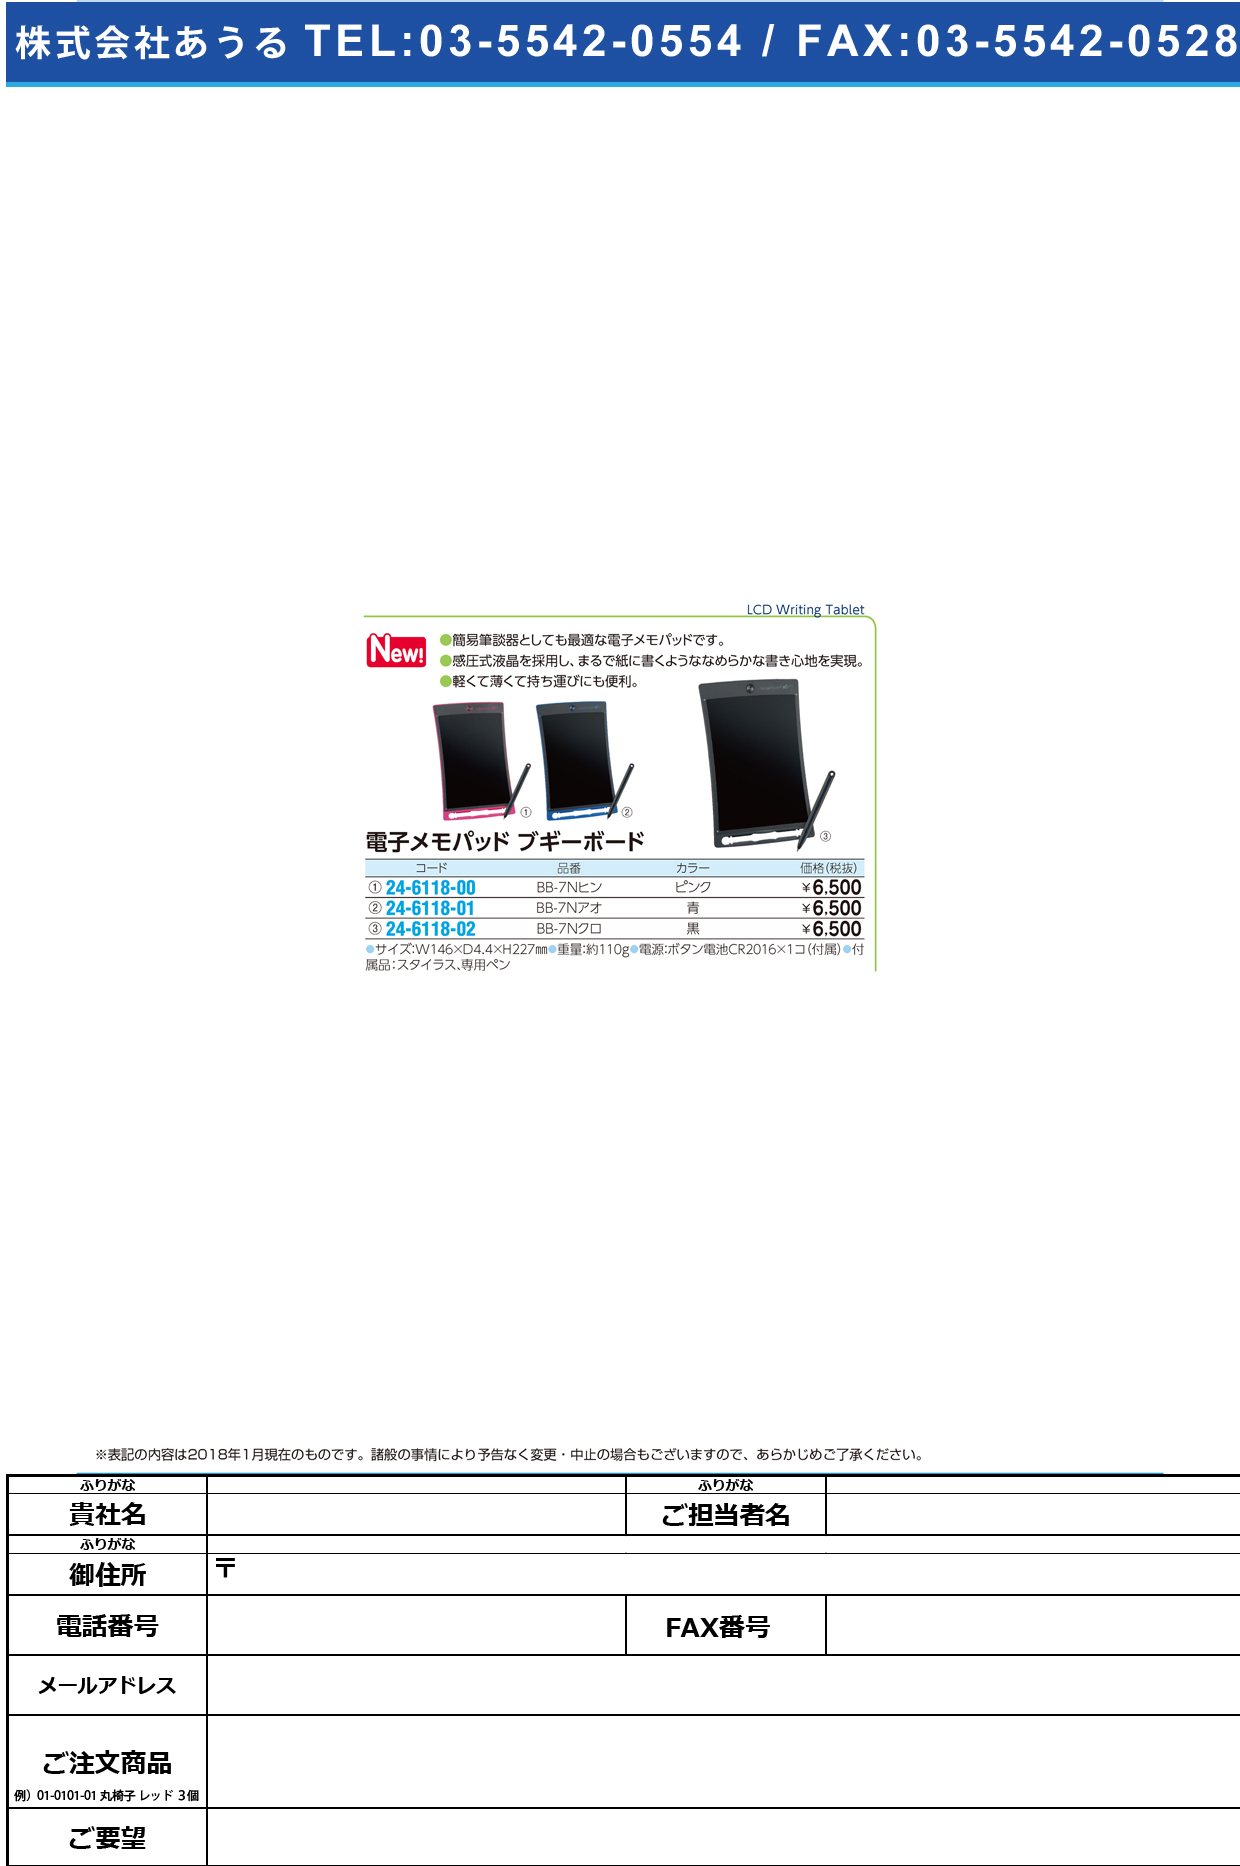 (24-6118-01)電子メモパッドブギーボード BB-7ﾌﾞﾙｰ ﾃﾞﾝｼﾒﾓﾊﾟｯﾄﾞﾌﾞｷﾞｰﾎﾞｰﾄ【1台単位】【2018年カタログ商品】